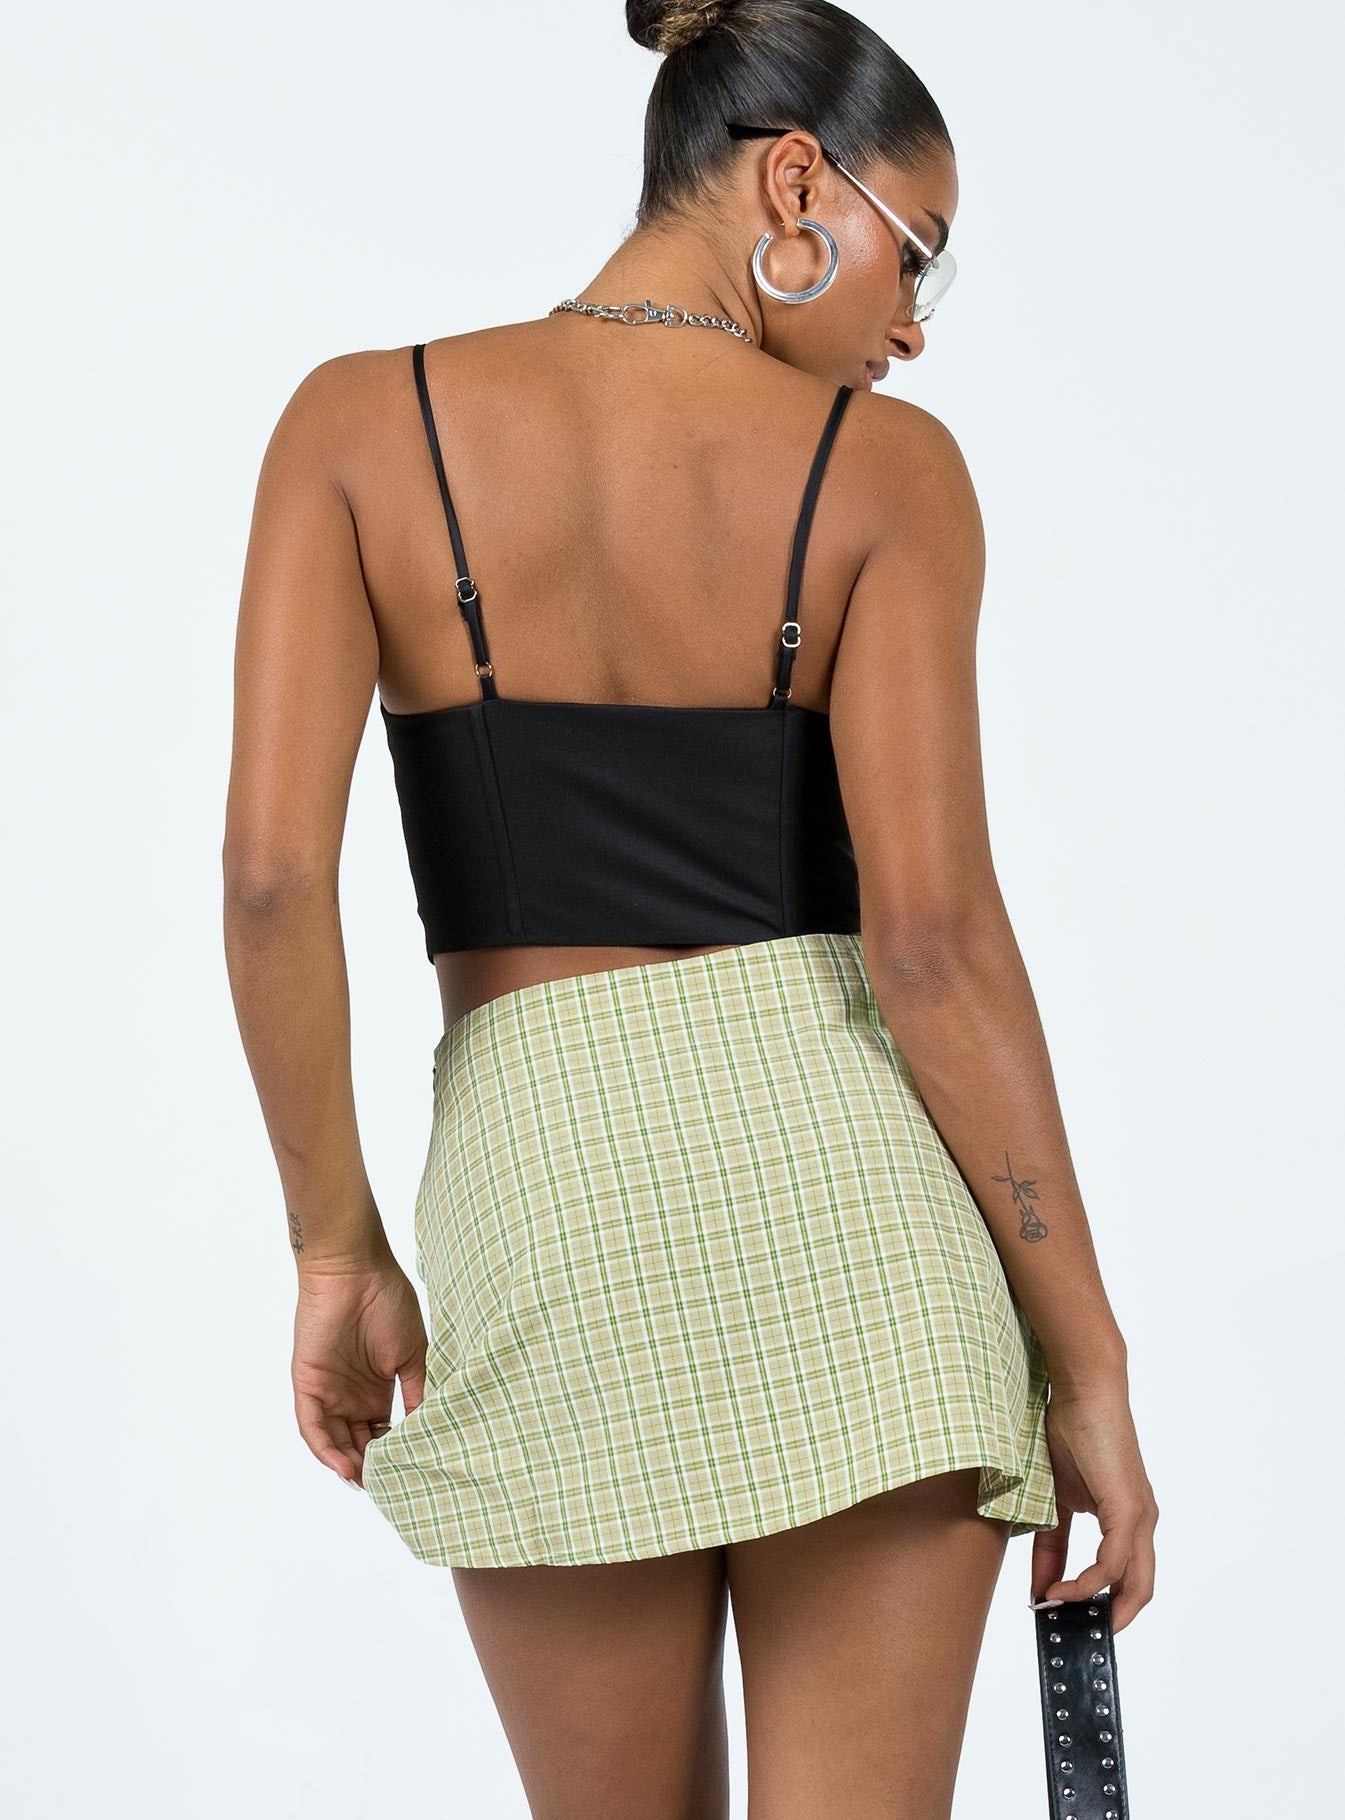 Aayomet Sparkly Skirt Women's Vintage Velvet Stretchy Mini Flared Skater  Skirt,Green M - Walmart.com